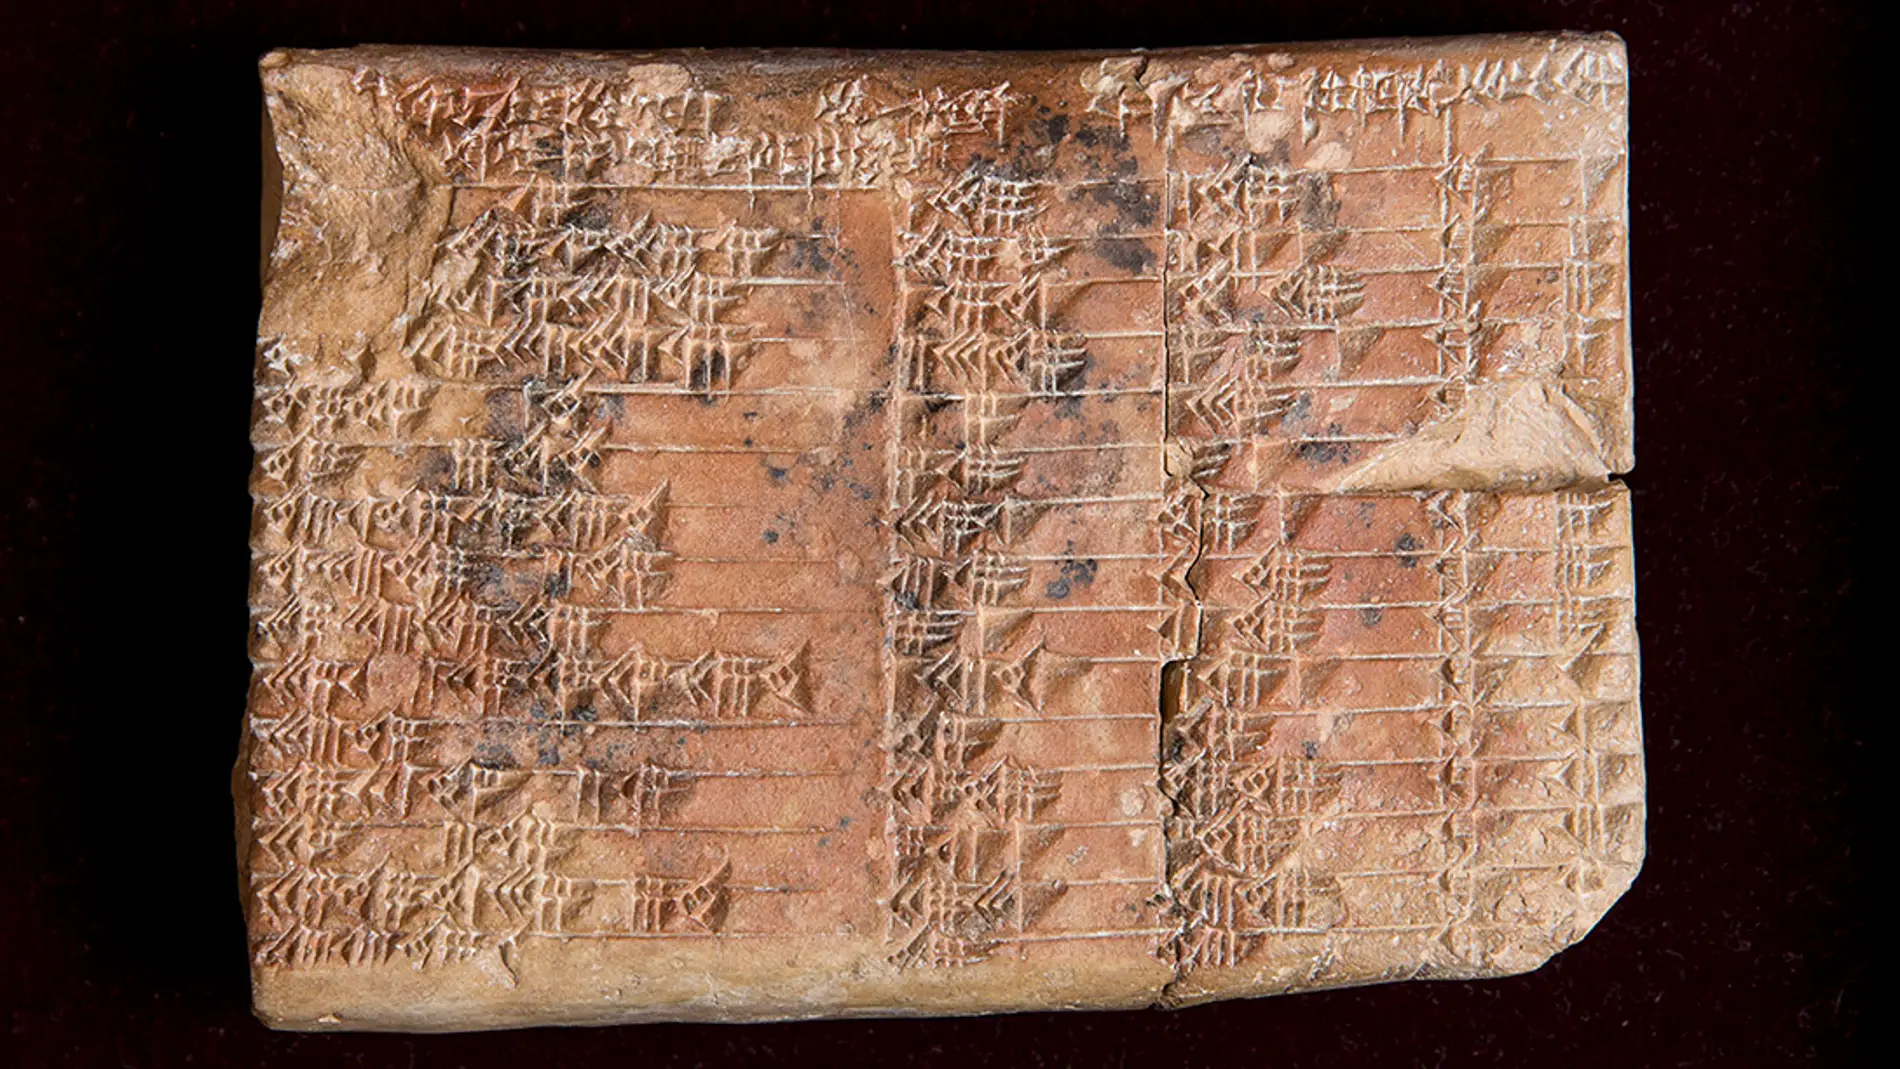 Una tablilla babilonica esconde la tabla trigonometrica mas antigua del mundo